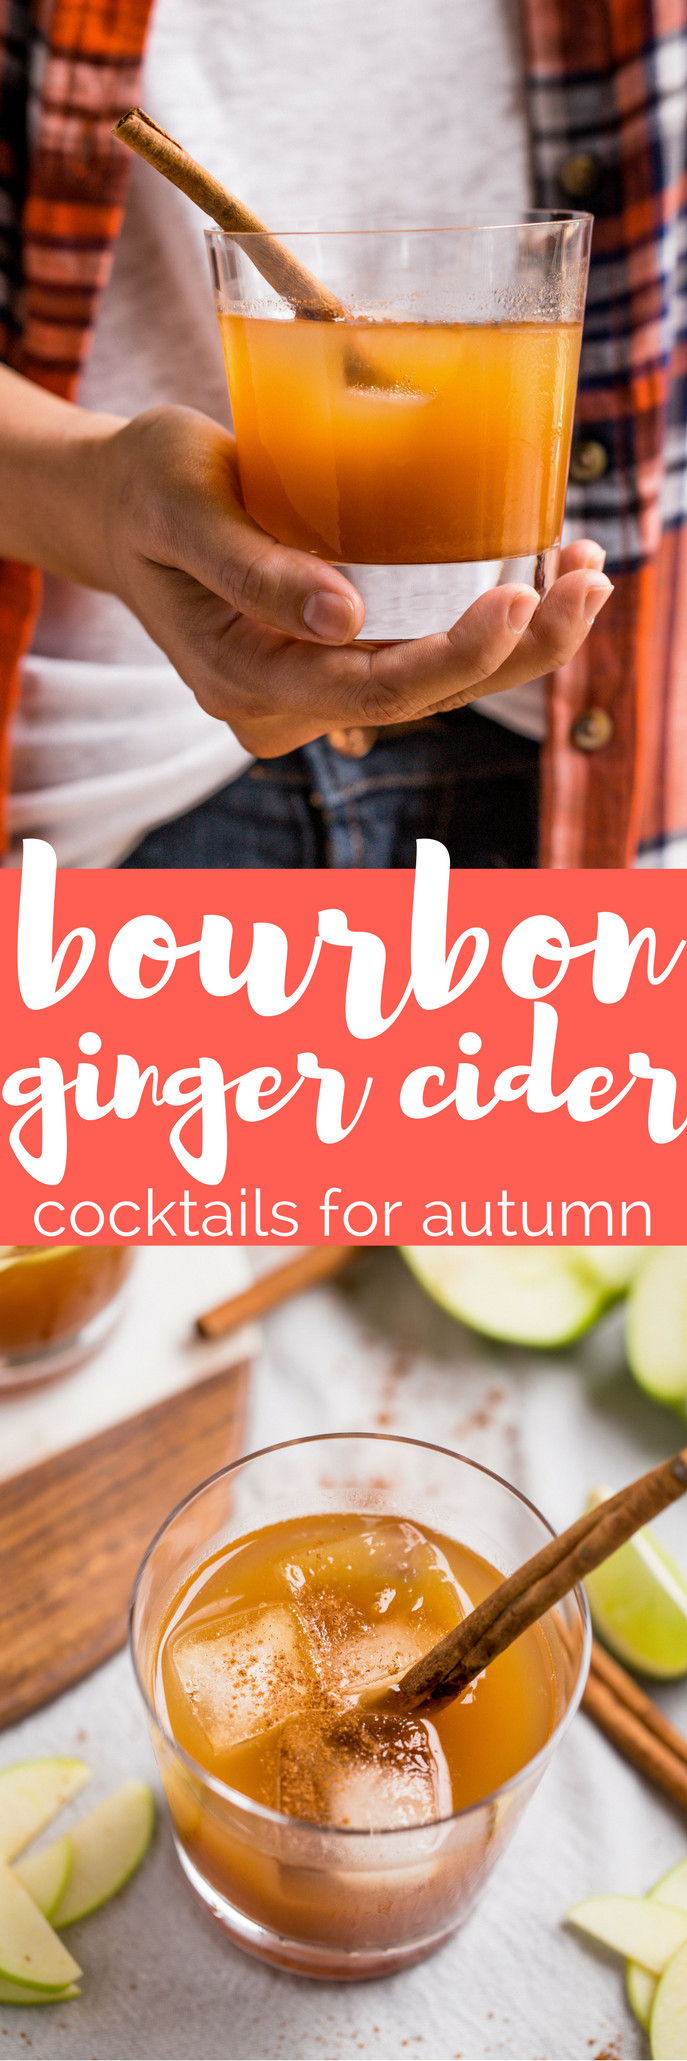 Ginger Beer Bourbon Cocktails
 bourbon ginger cider cocktails for autumn plays well